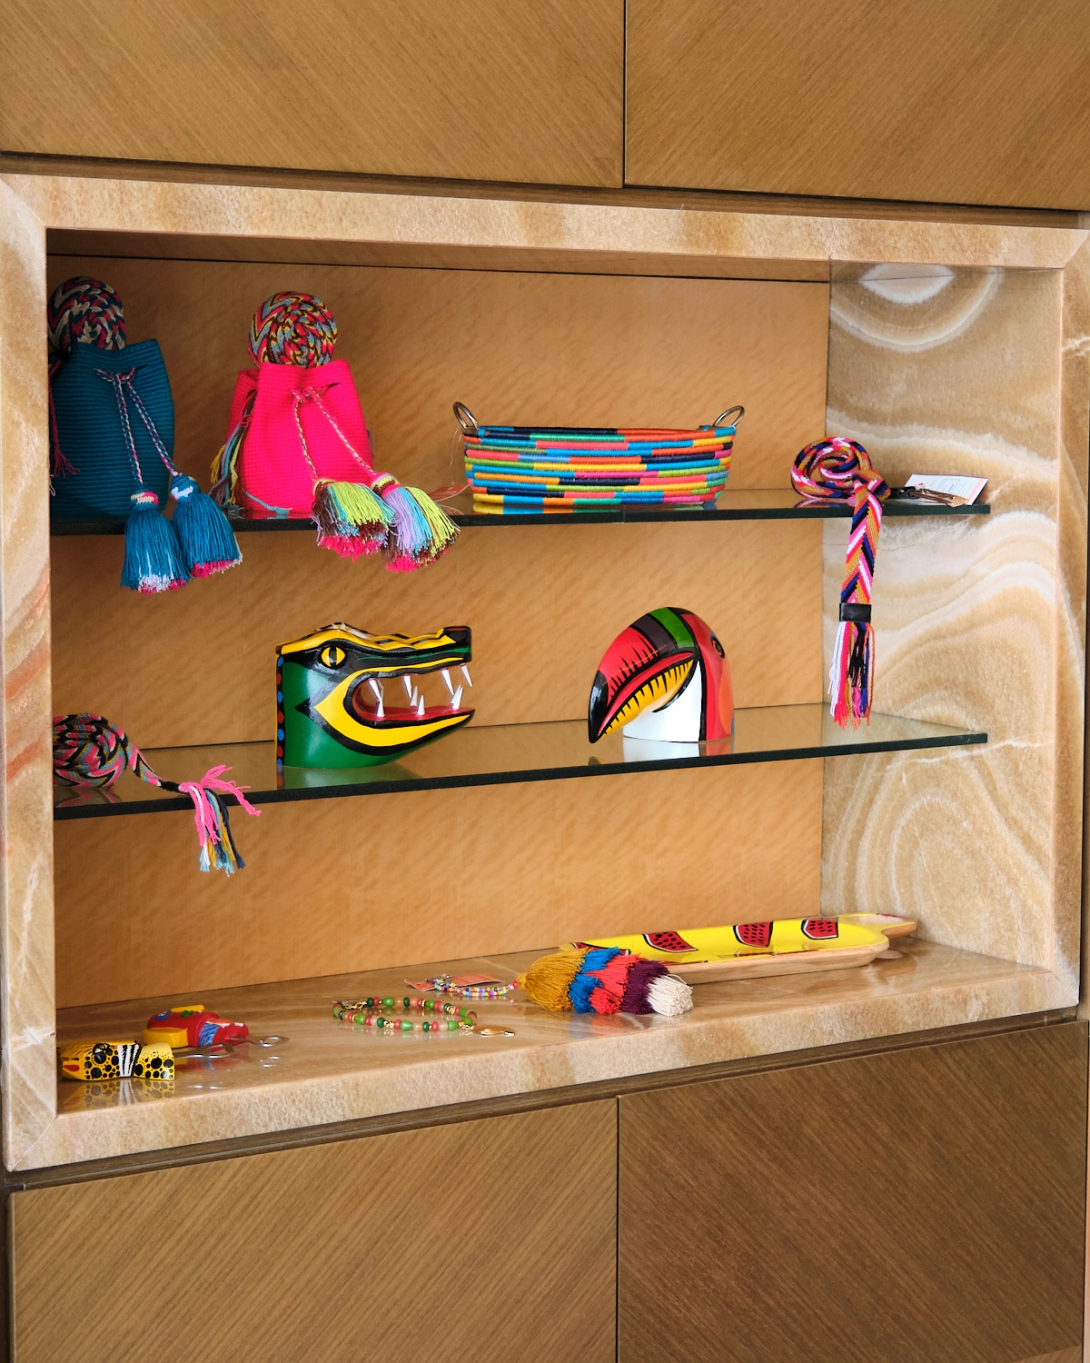 Exhibición "Colors of Colombia: A Wayuu Handbags & Accessories"